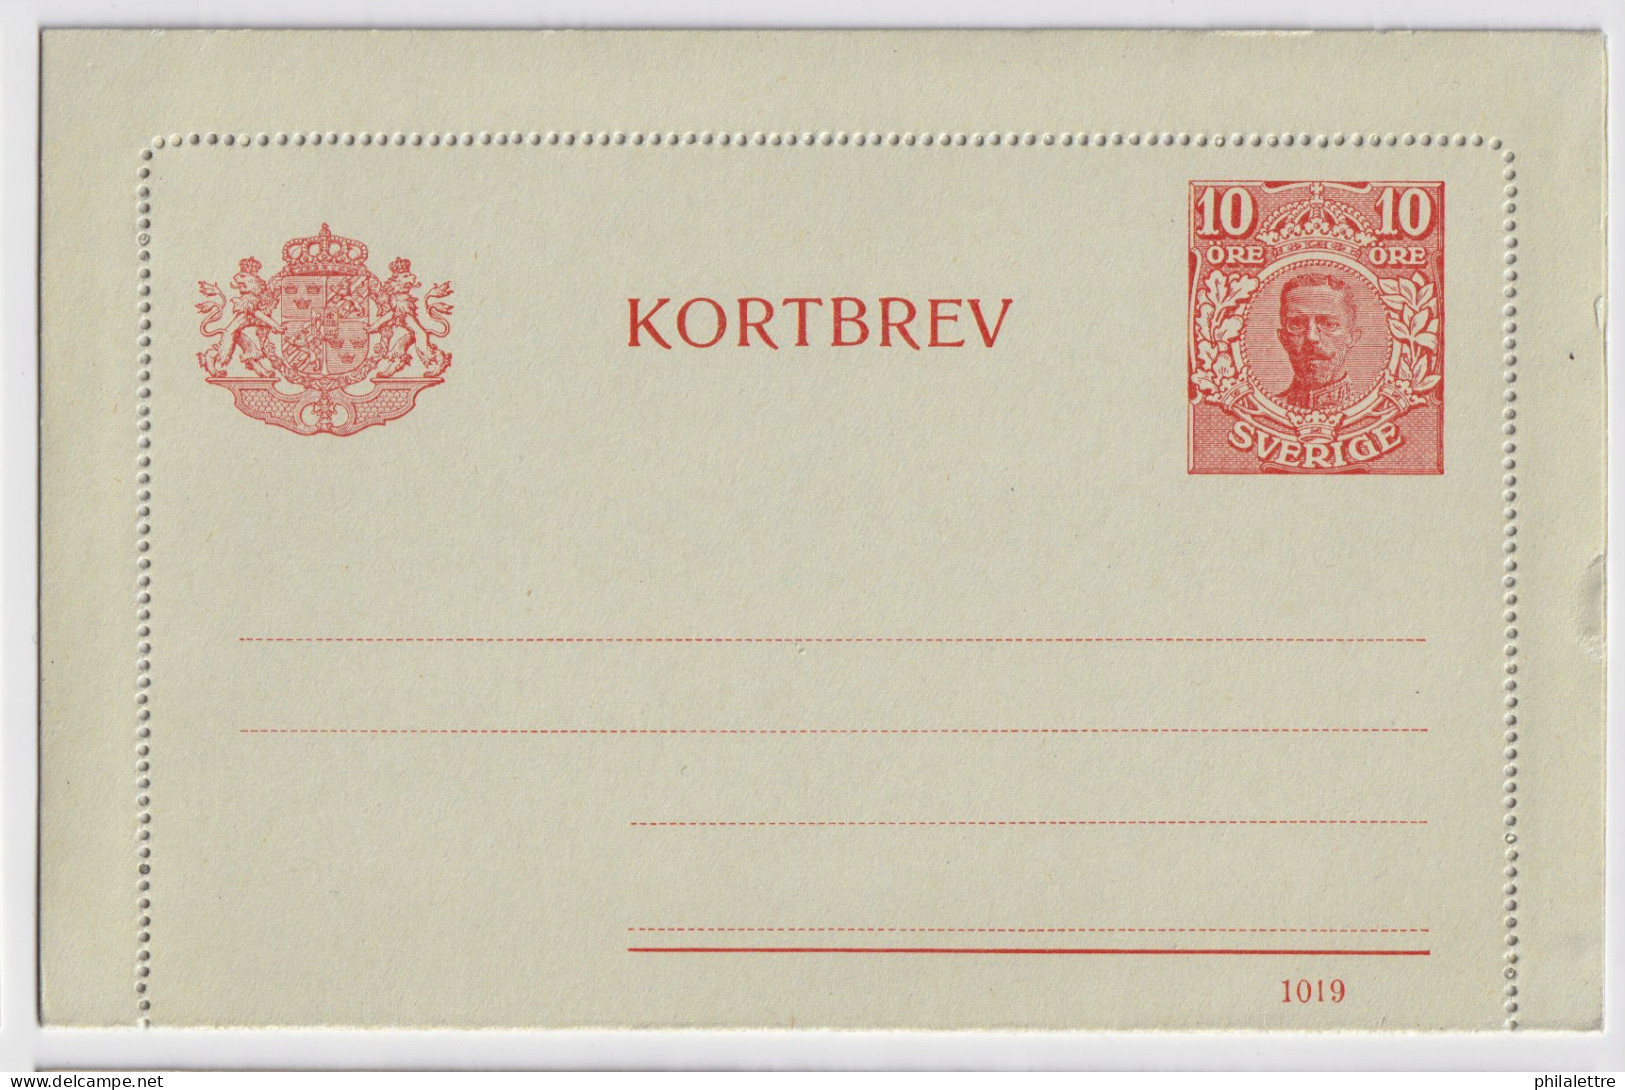 SUÈDE / SWEDEN - 1919 - Letter-Card Mi.K13 10ö Red (d.1019) Unused - Very Fine - Postal Stationery